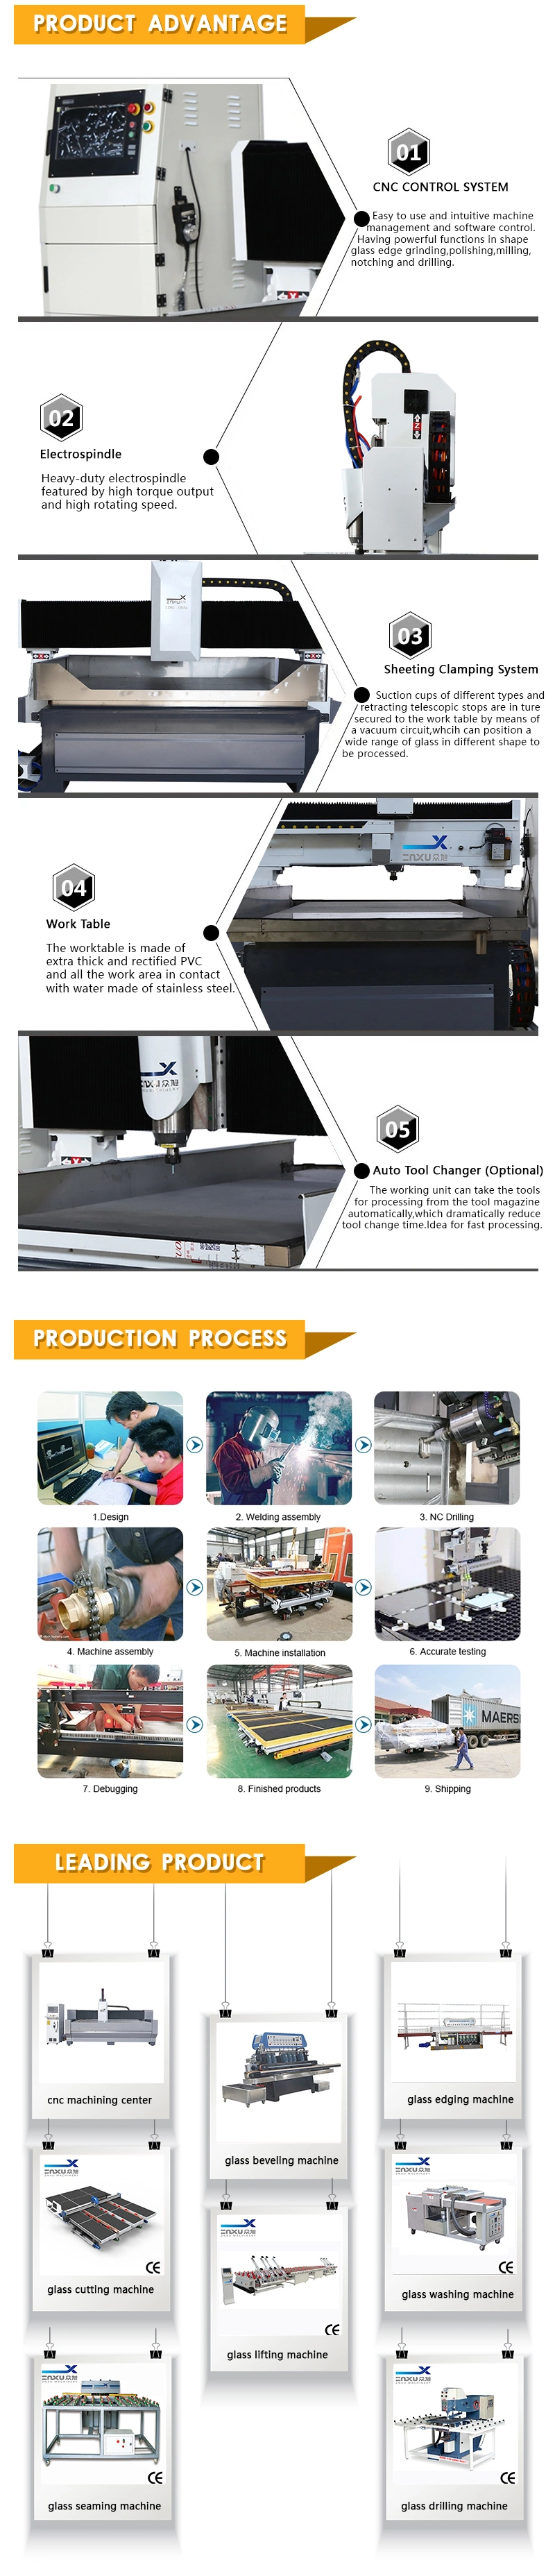 Zxx - C1015 CNC Laminated/Laminating Glass Single Cutter Automatic Glass Cutting/Cutter Machine (JFC5033)